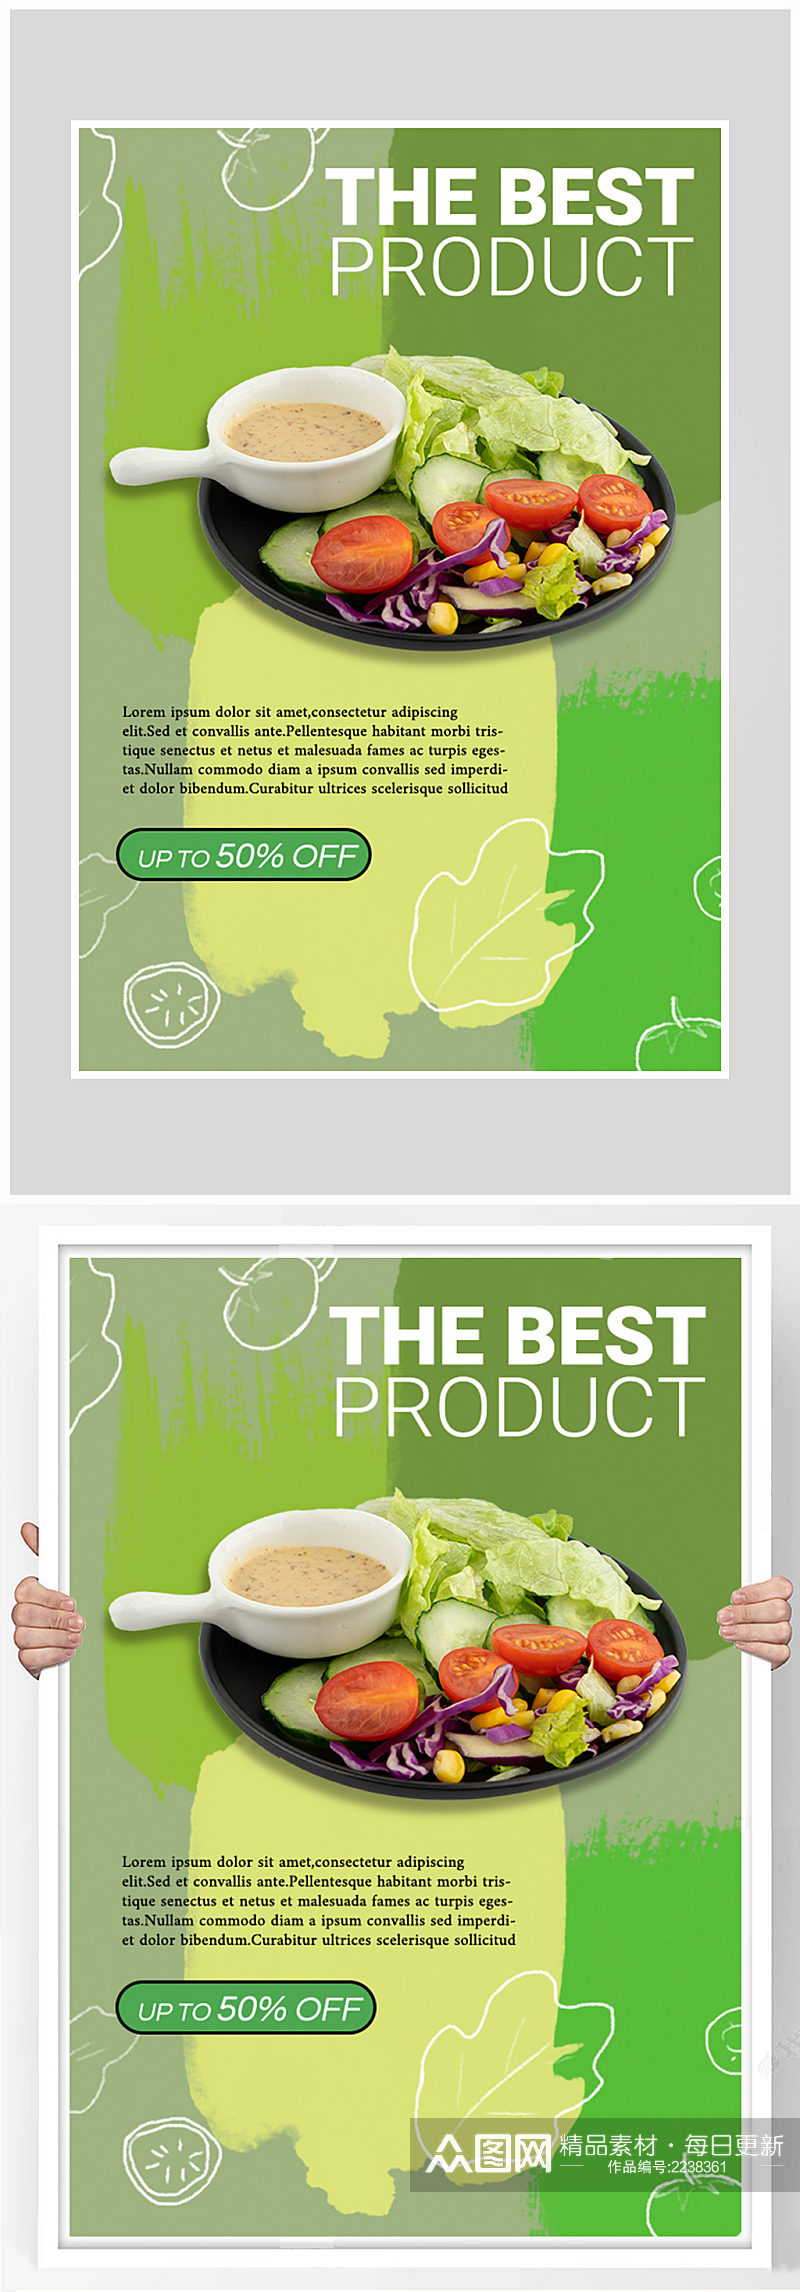 创意质感蔬菜沙拉健身锻炼海报设计素材